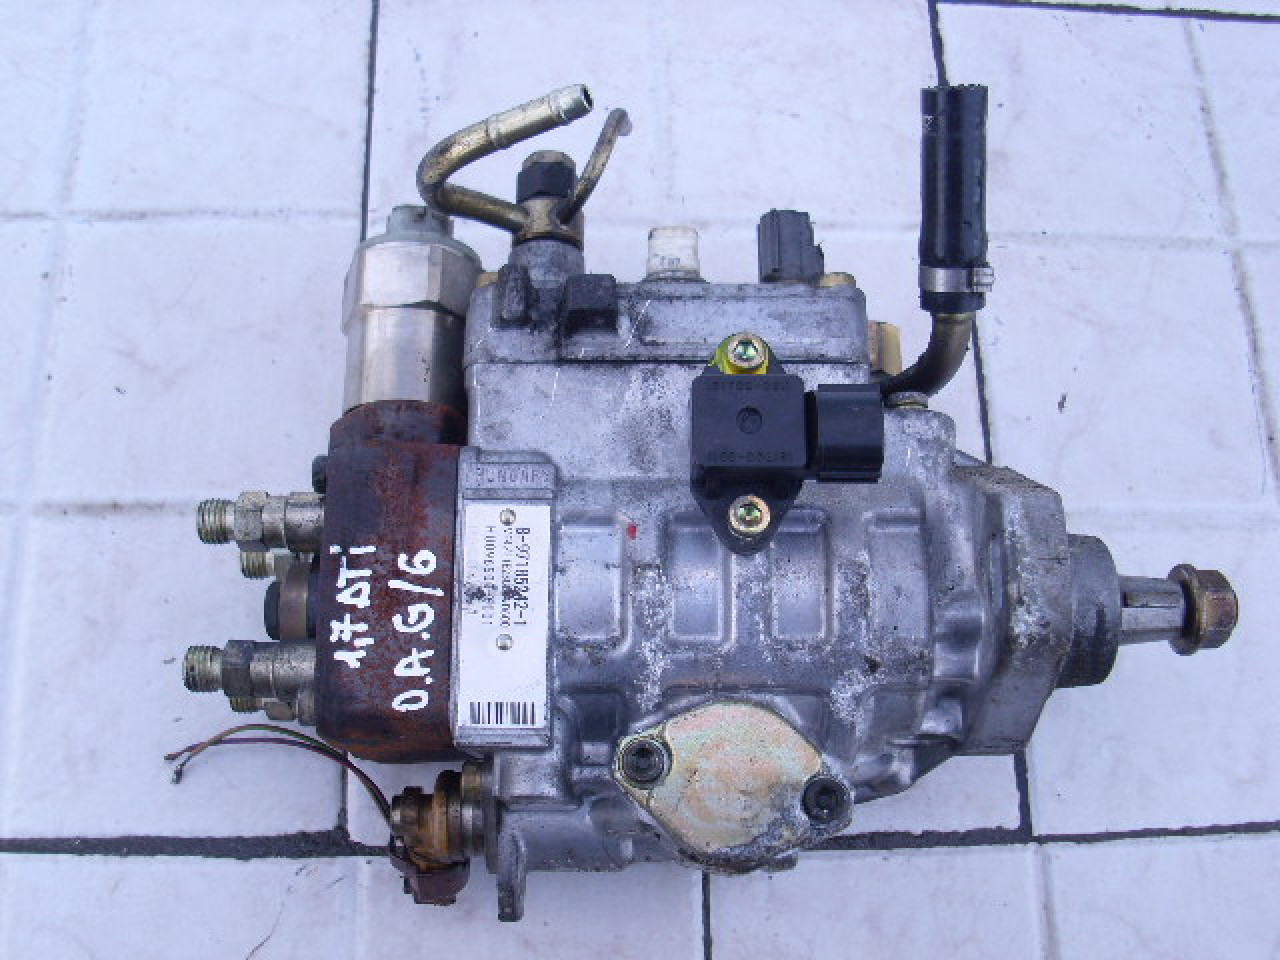 Pompa injectie Opel Astra G 1.7dti 16v; 8-97185242-1 ; HU096500-6001  #41842736